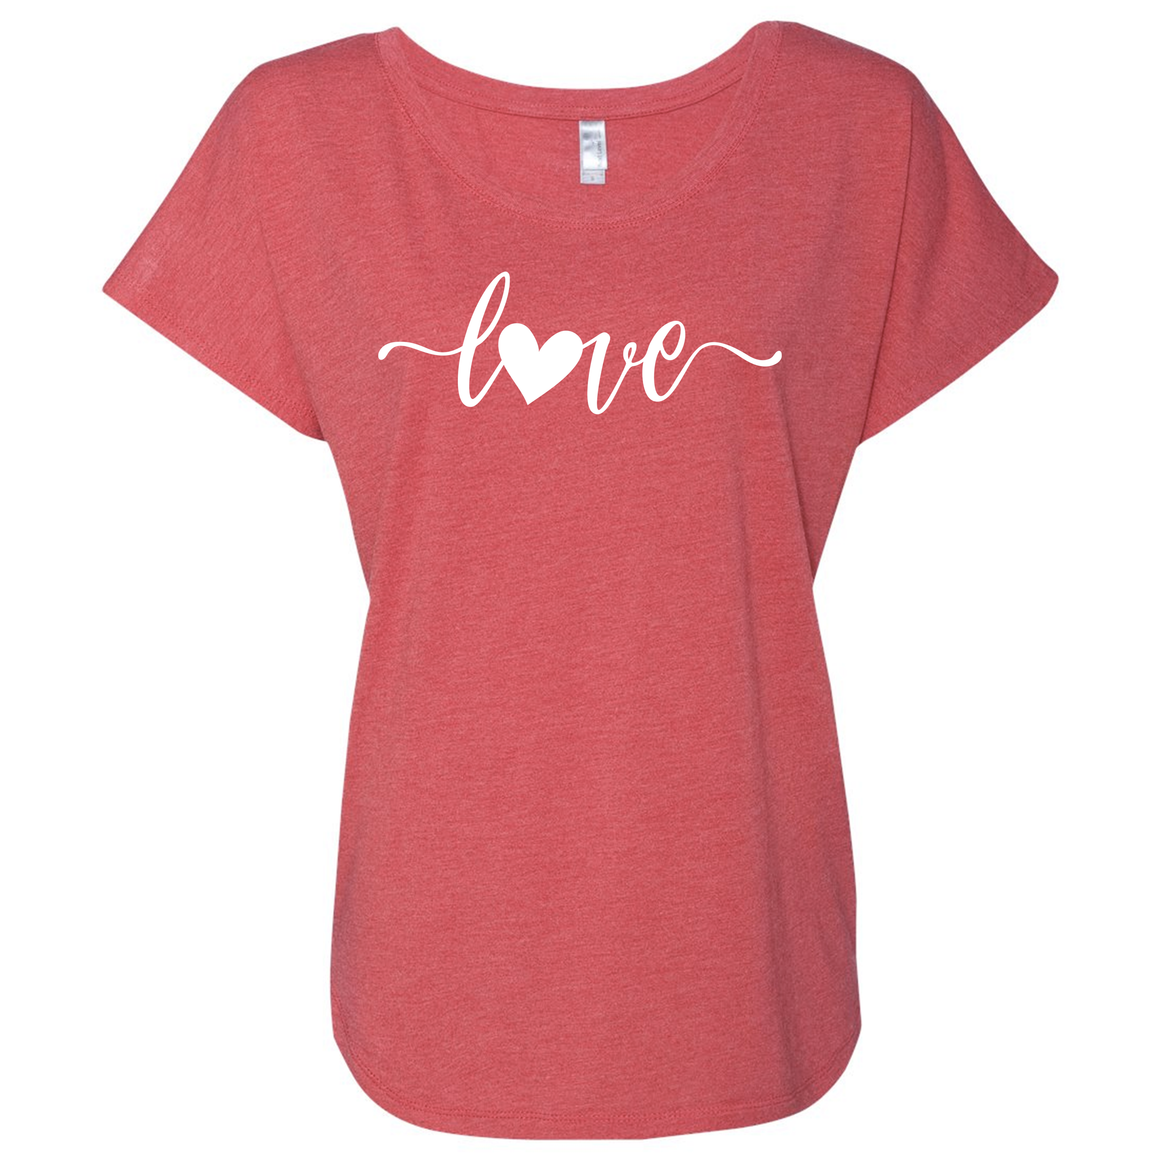 Women's Simple Love Triblend Short Sleeve Shirt